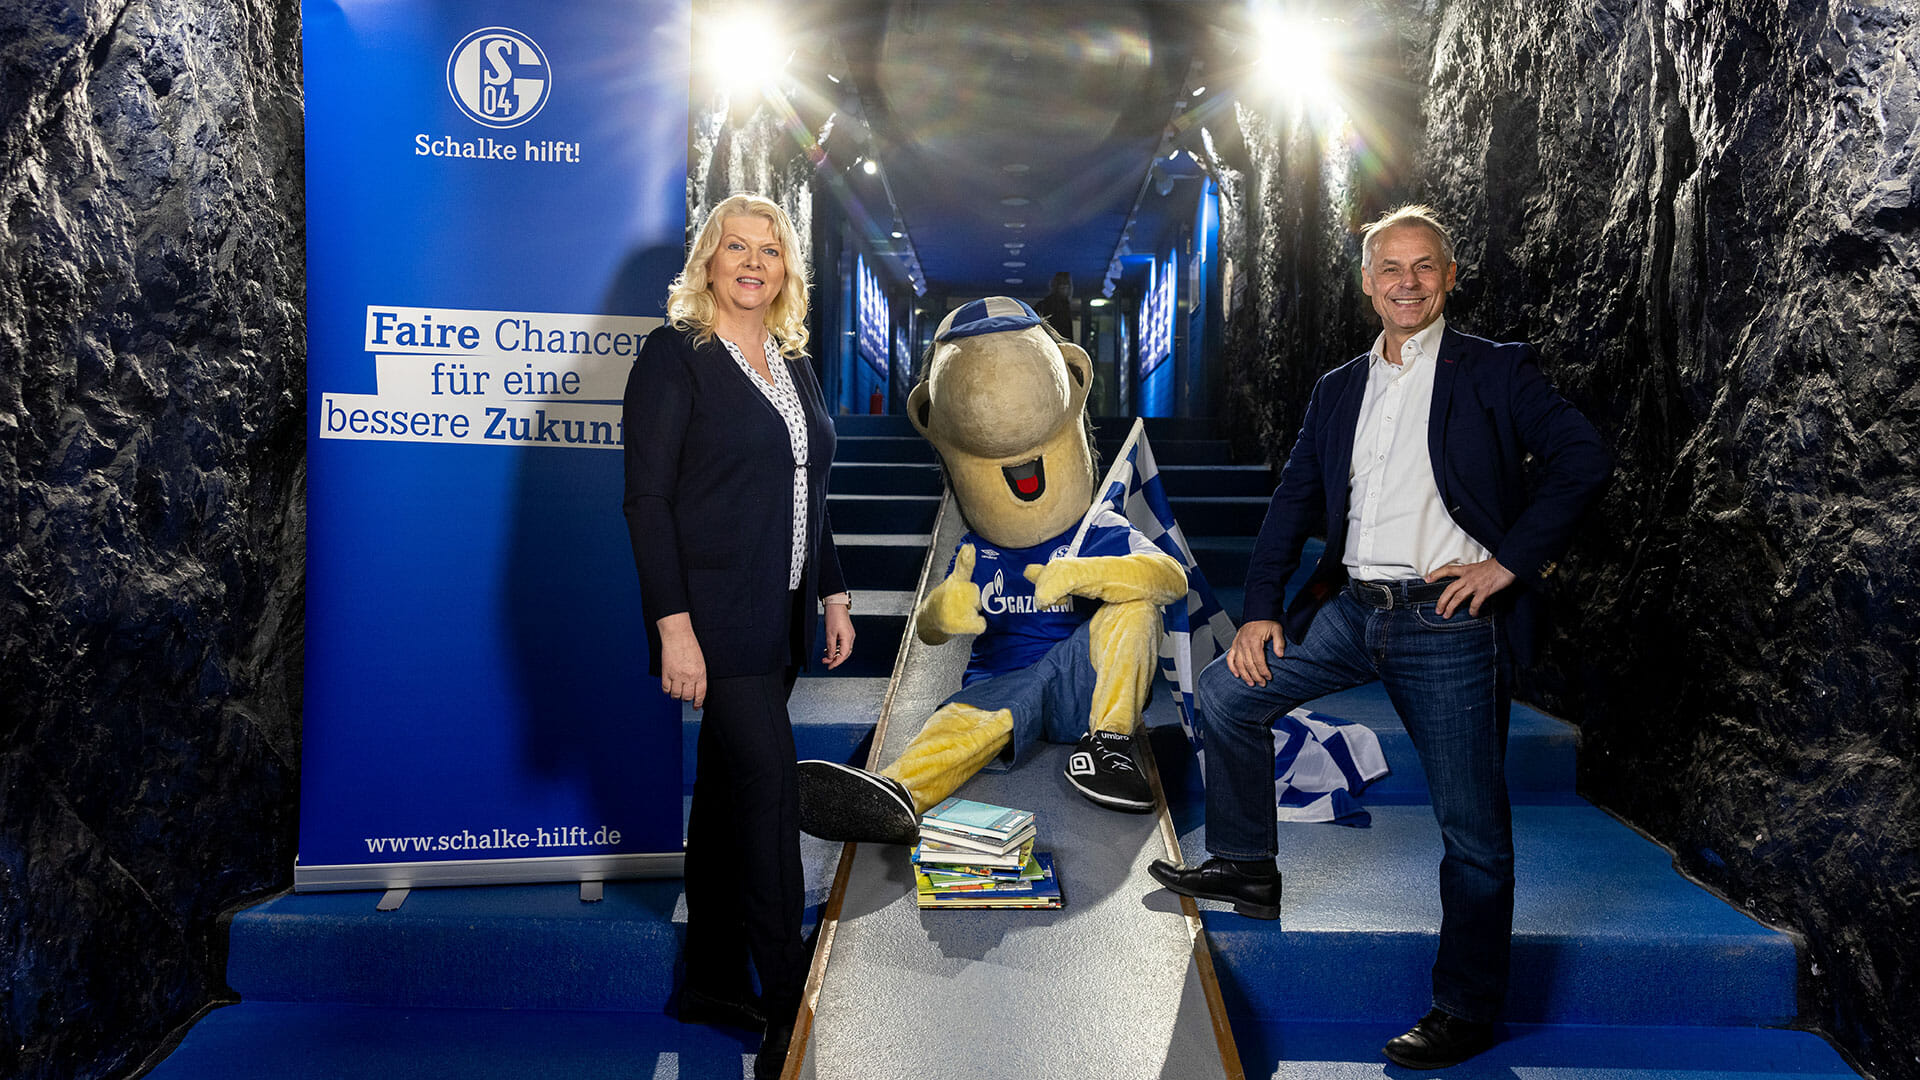 Schalke hilft!: Leseförderung bei Kindern